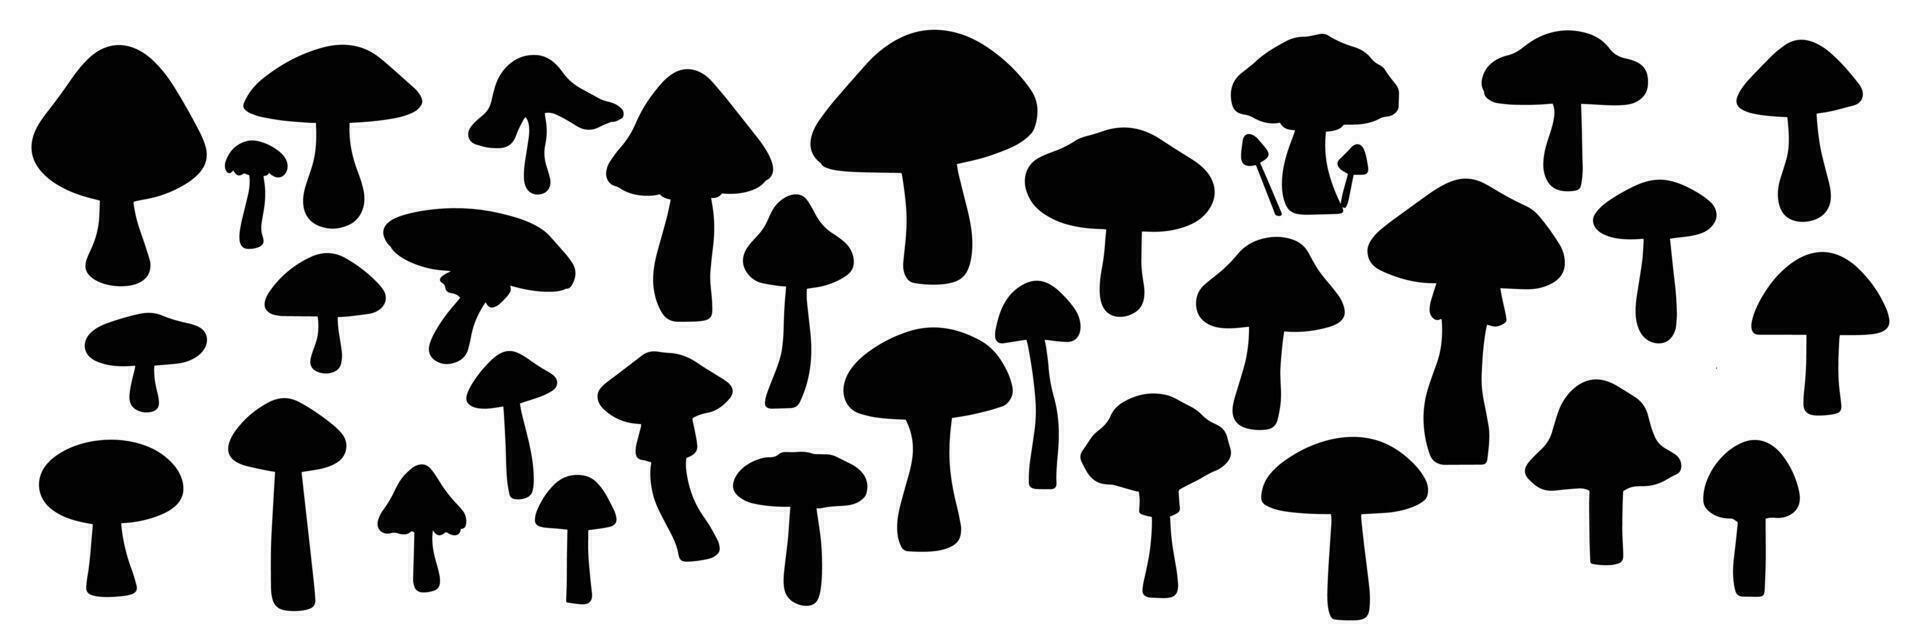 gros collection de champignons silhouette. vecteur illustration grand ensemble de champignon